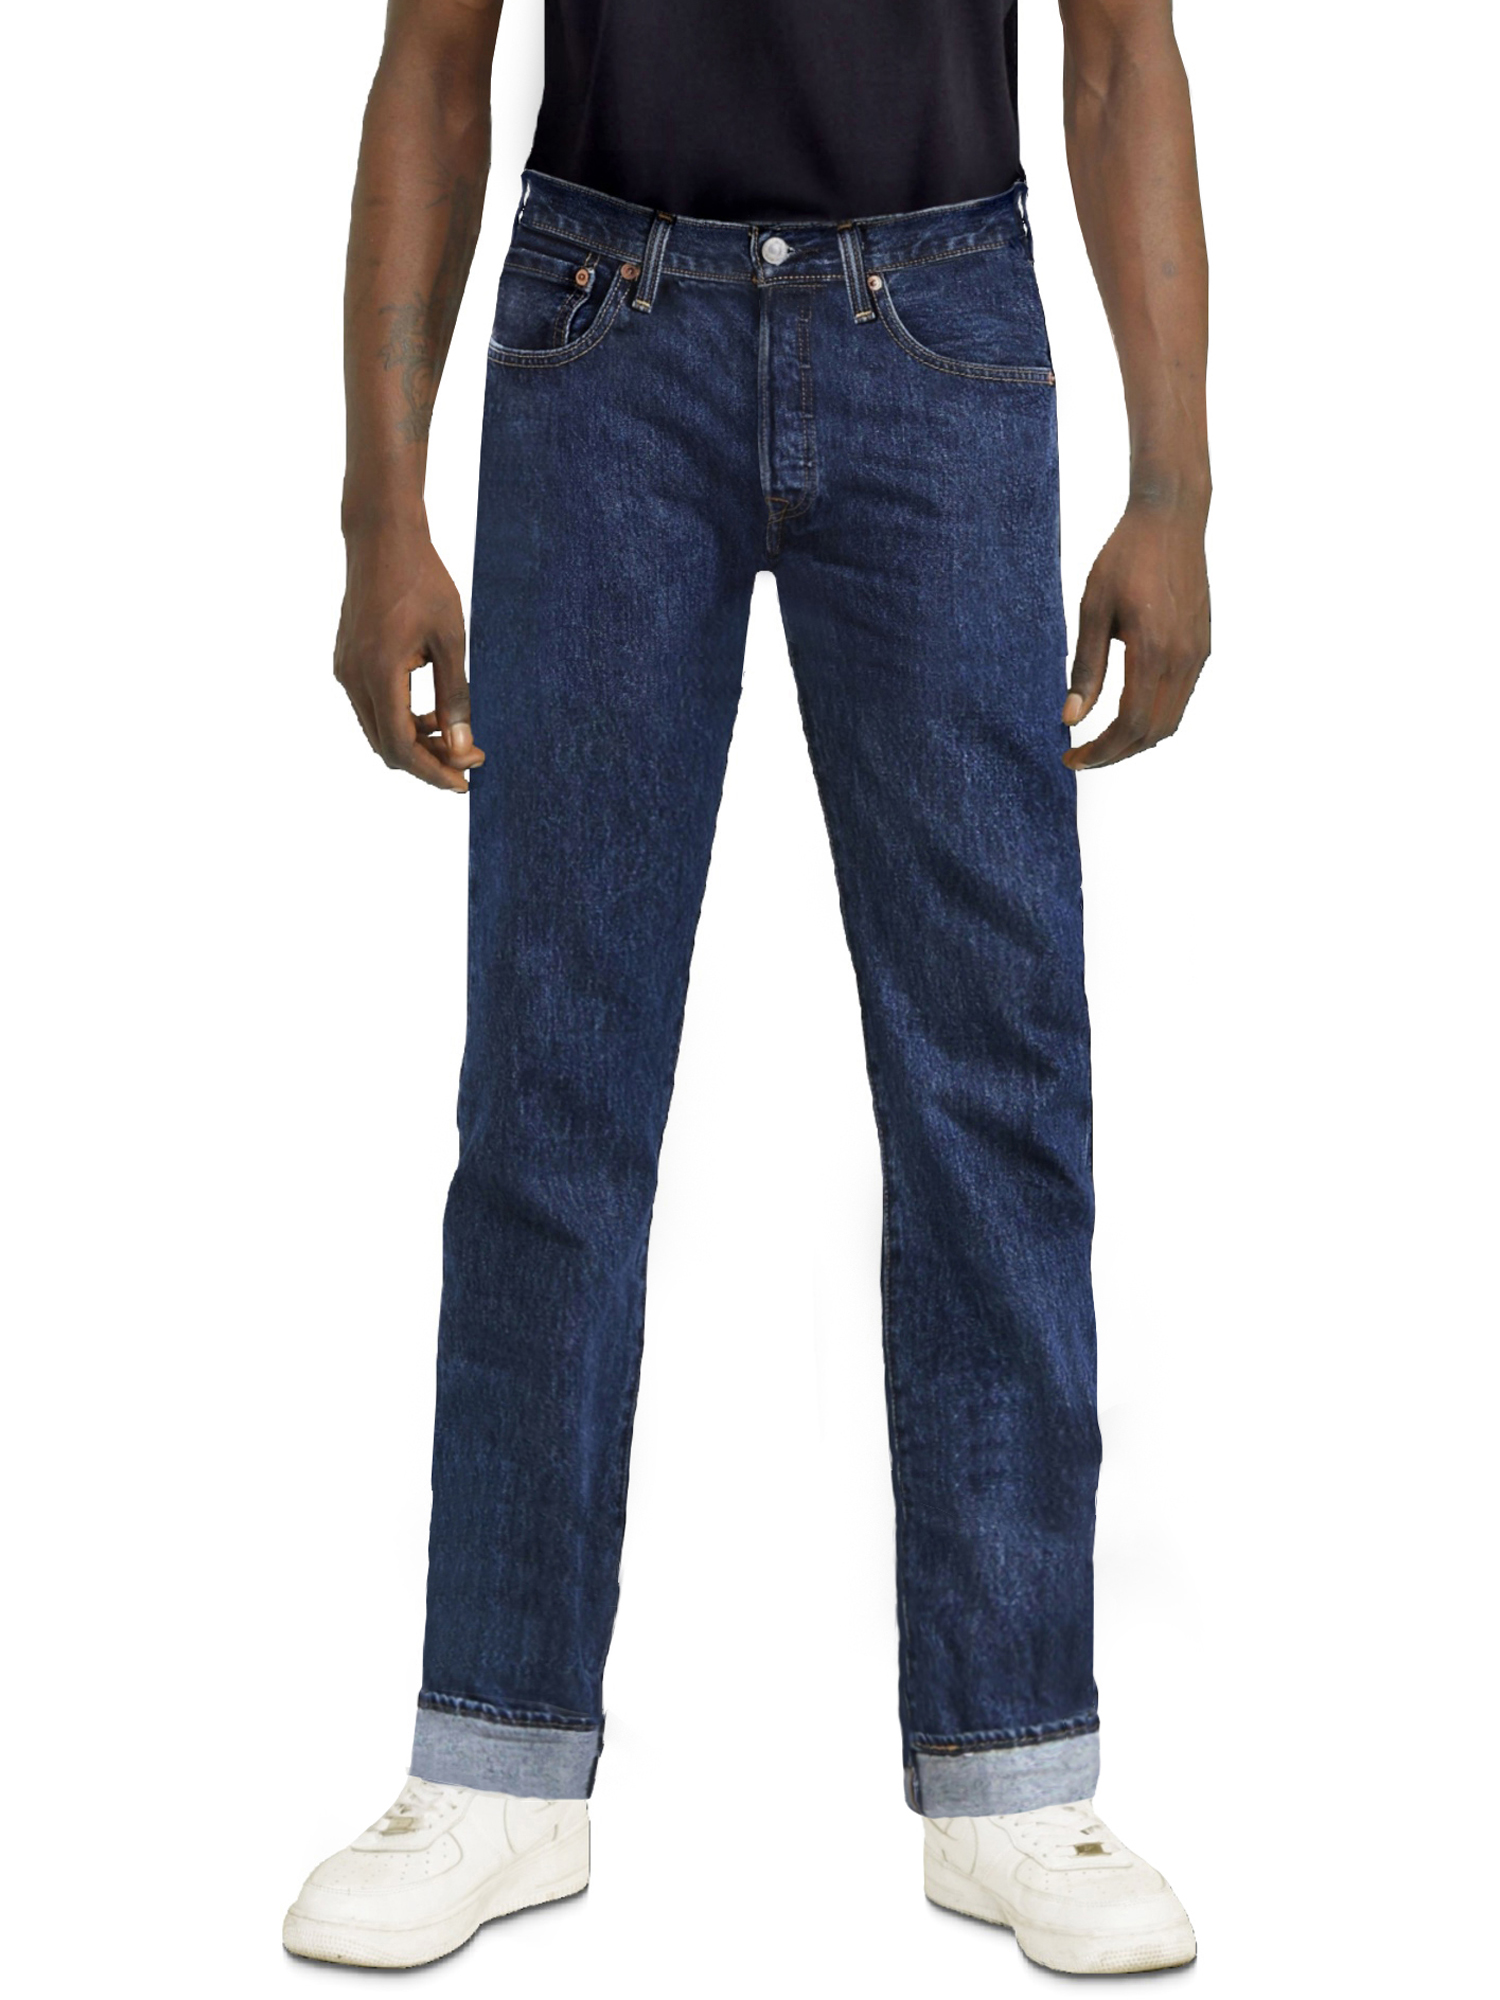 Levi's Men's 501 Original Fit Jeans - image 4 of 9